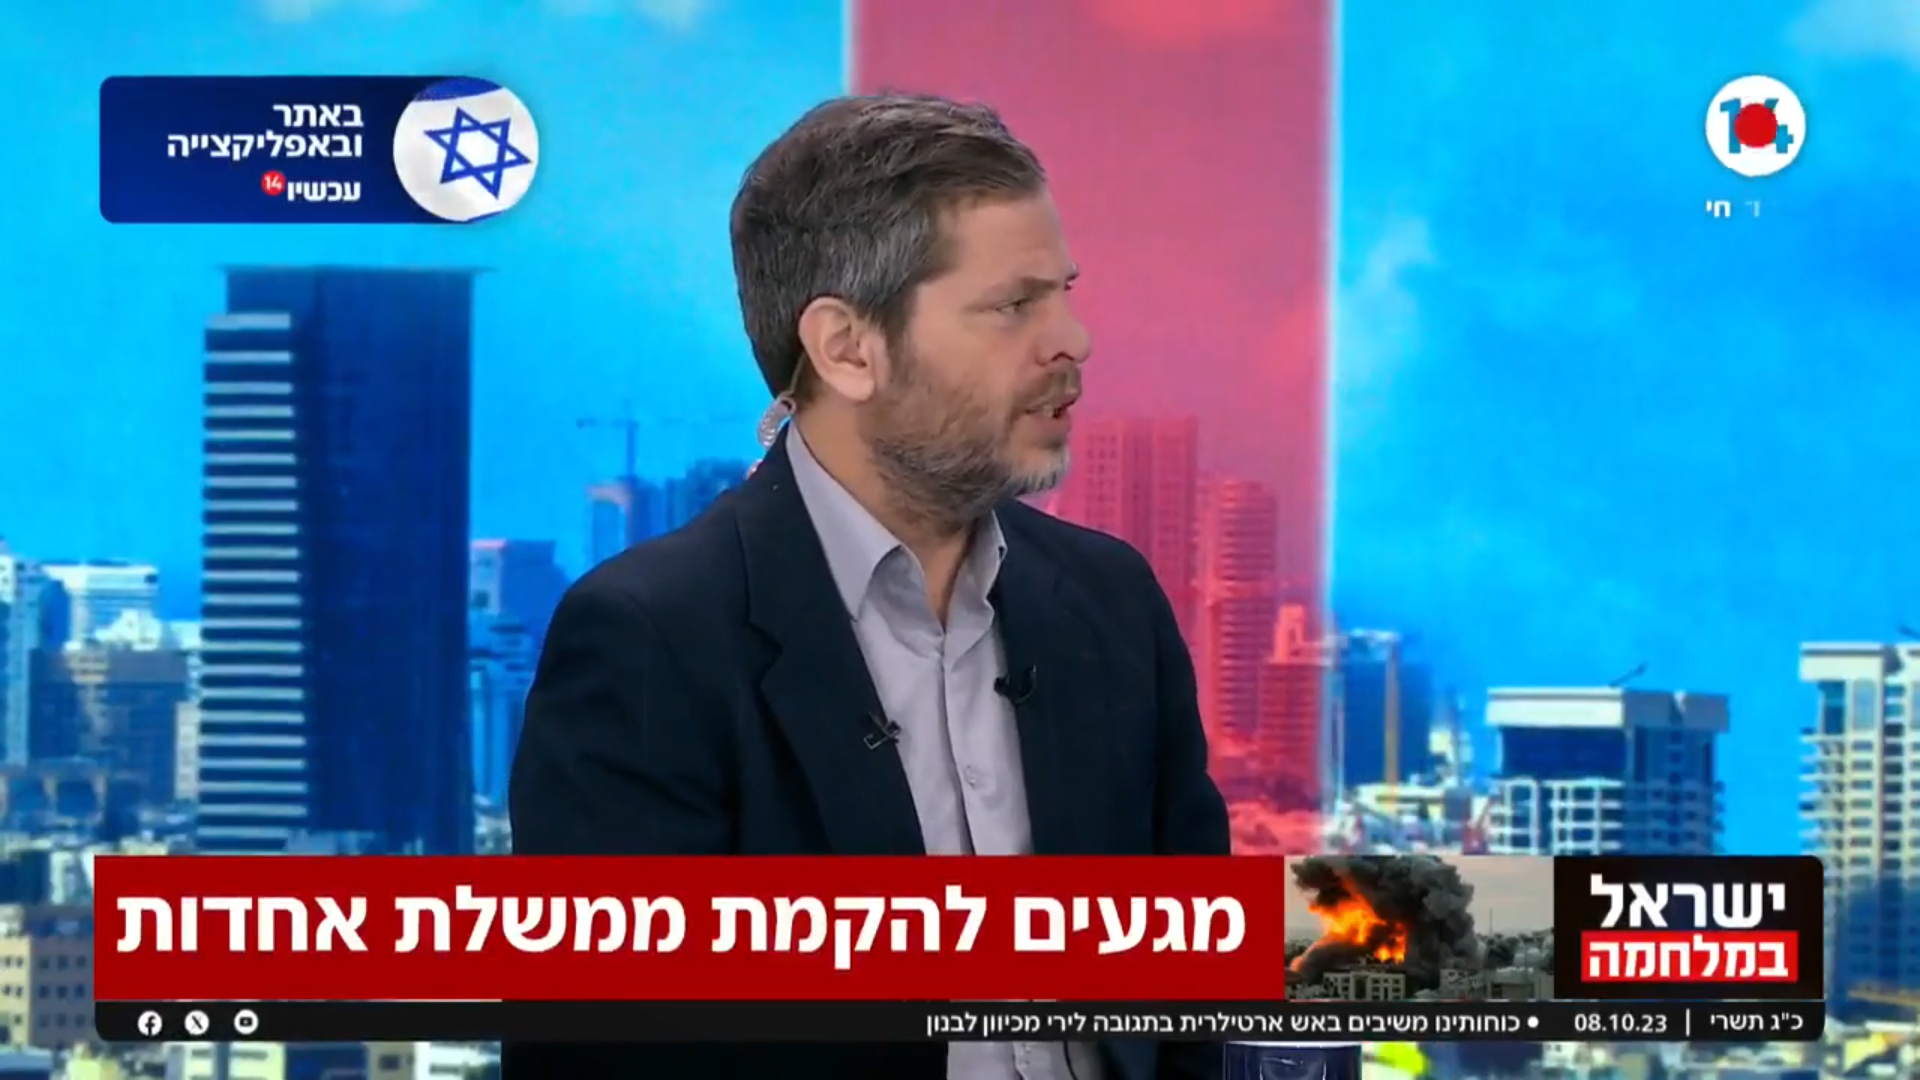 שי גולדן, מגיש תוכנית הבוקר של ערוץ 14, בבוקר שאחרי מתקפת חמאס; 8.10.23 (צילום מסך)